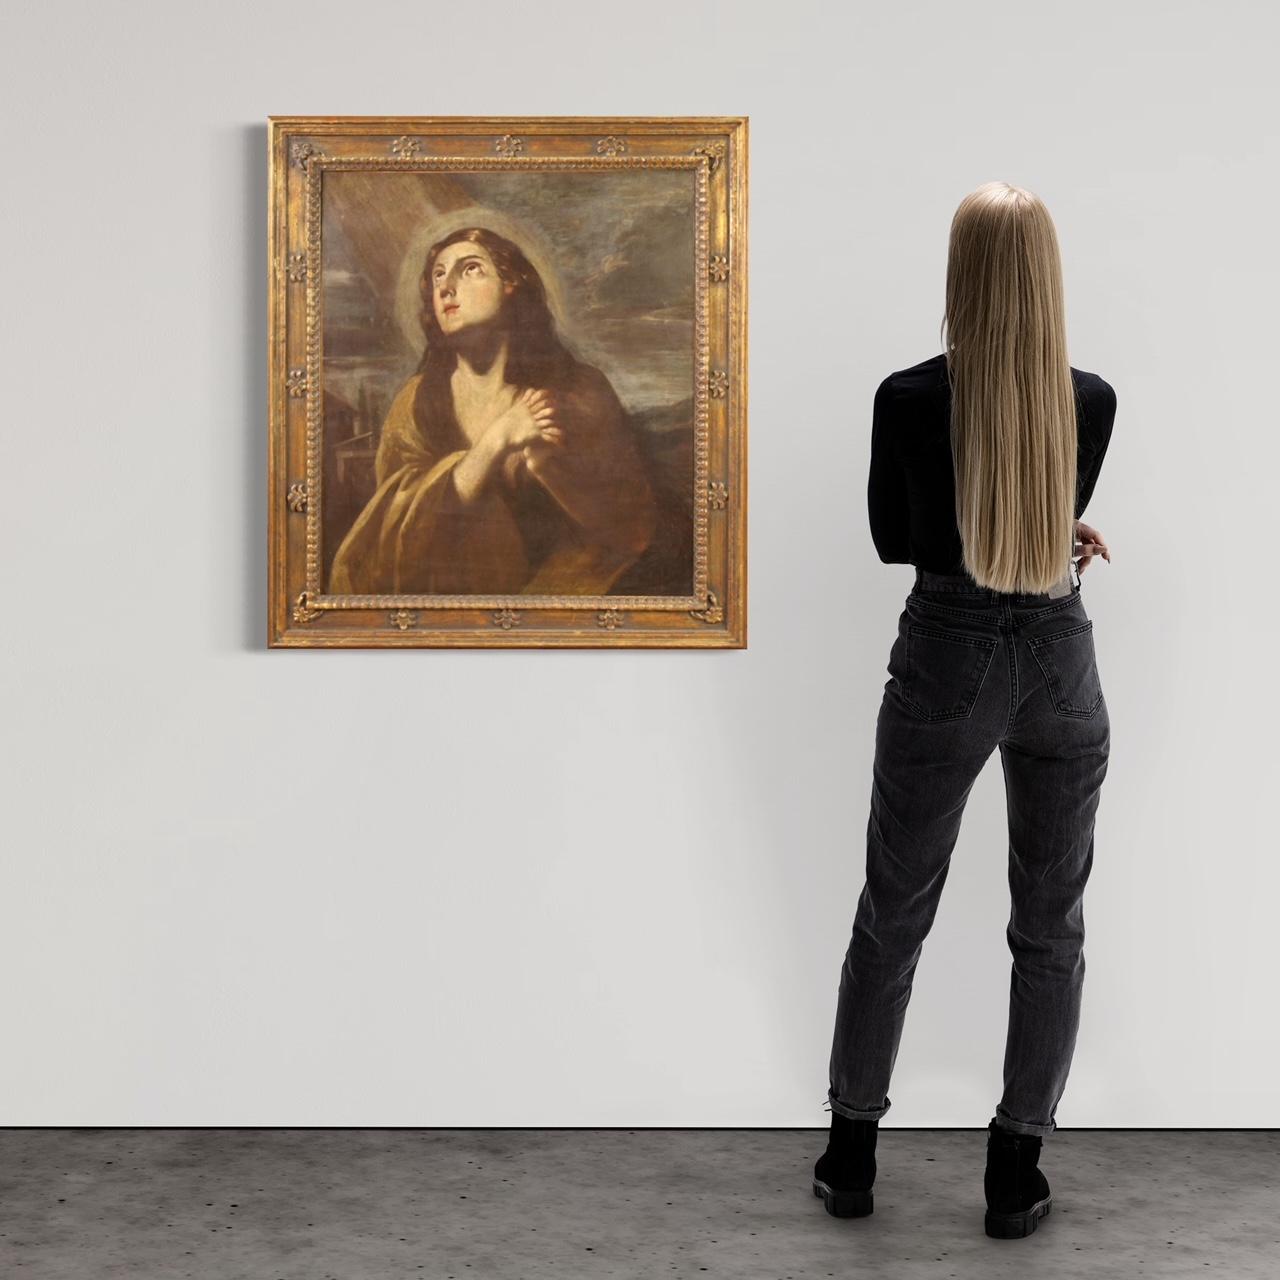 Antikes italienisches Gemälde aus der zweiten Hälfte des 17. Jahrhunderts. Kunstwerk Öl auf Leinwand, das ein religiöses Thema darstellt Büßende Magdalena von ausgezeichneter malerischer Qualität. Großformatiges Gemälde und angenehmes Mobiliar in